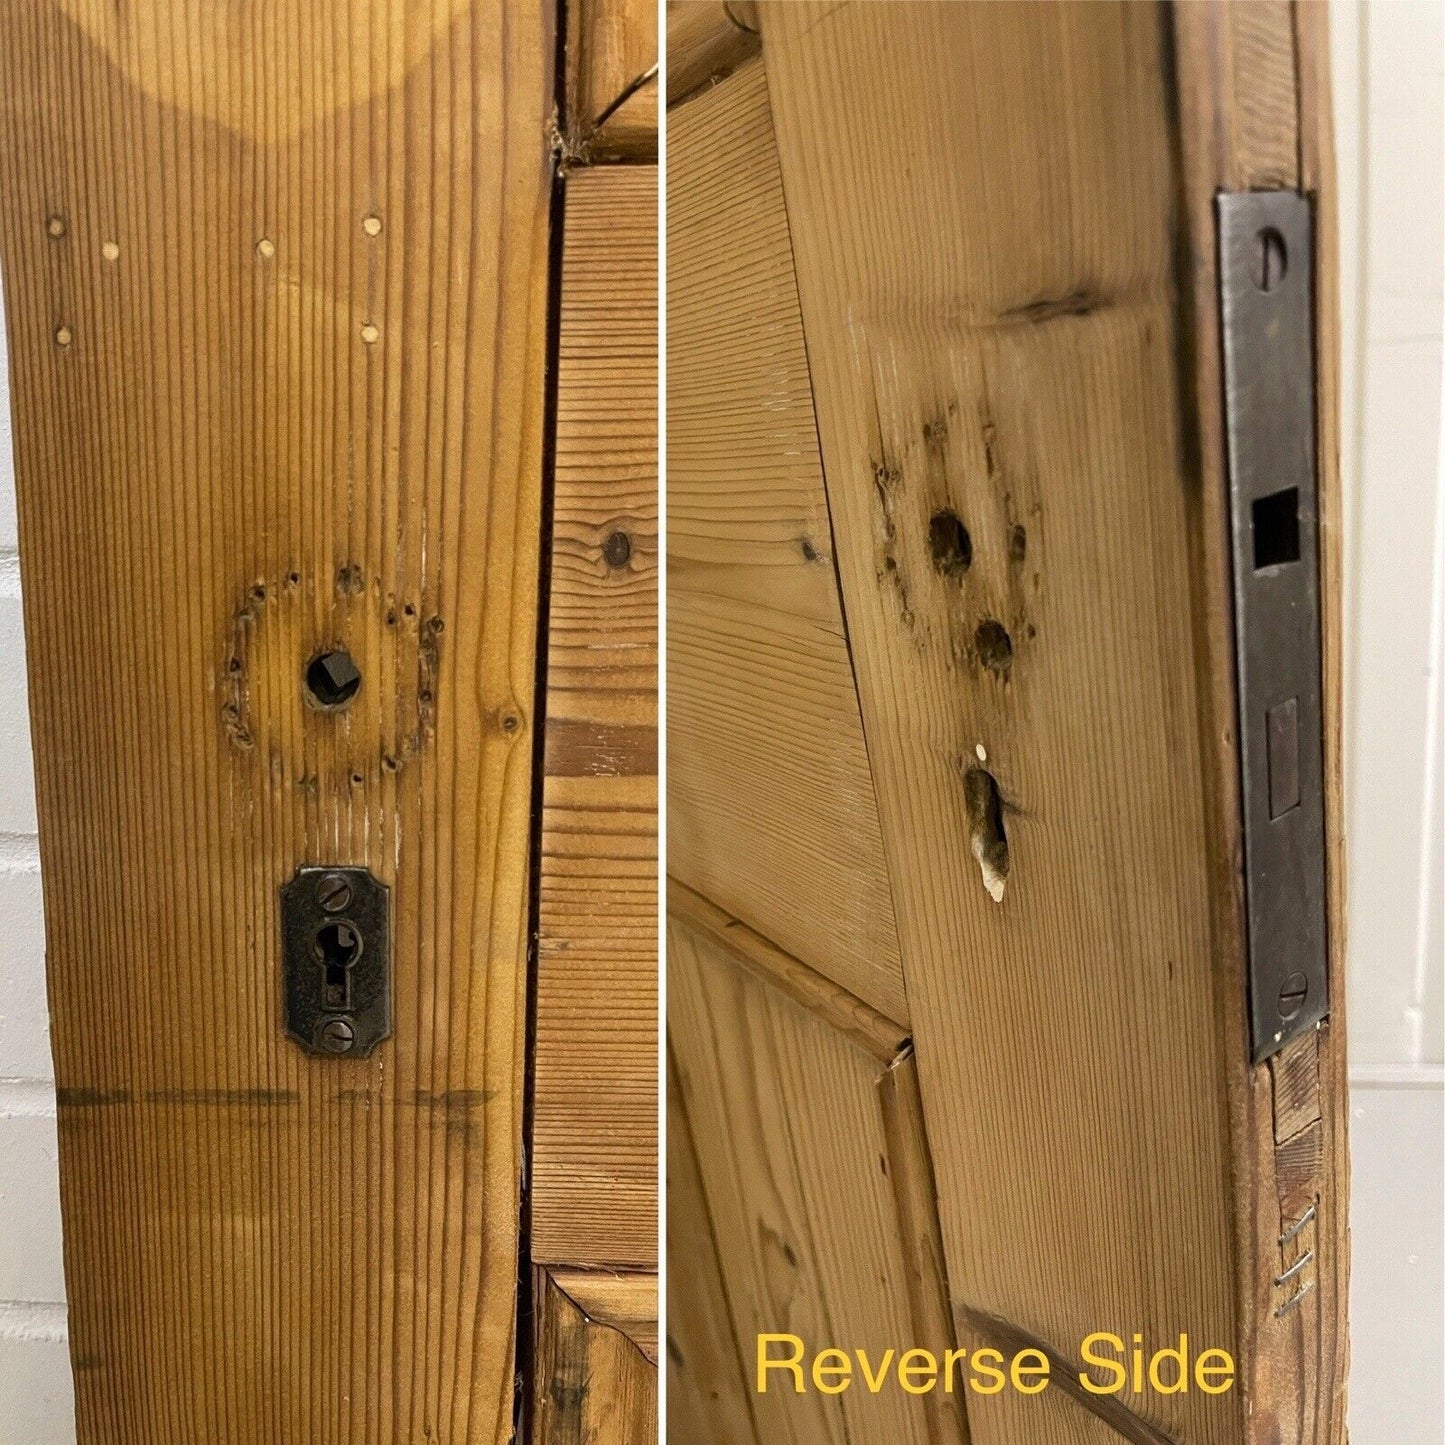 Original Vintage Reclaimed Victorian Pine Internal 4 panel Door 1993 x 825mm